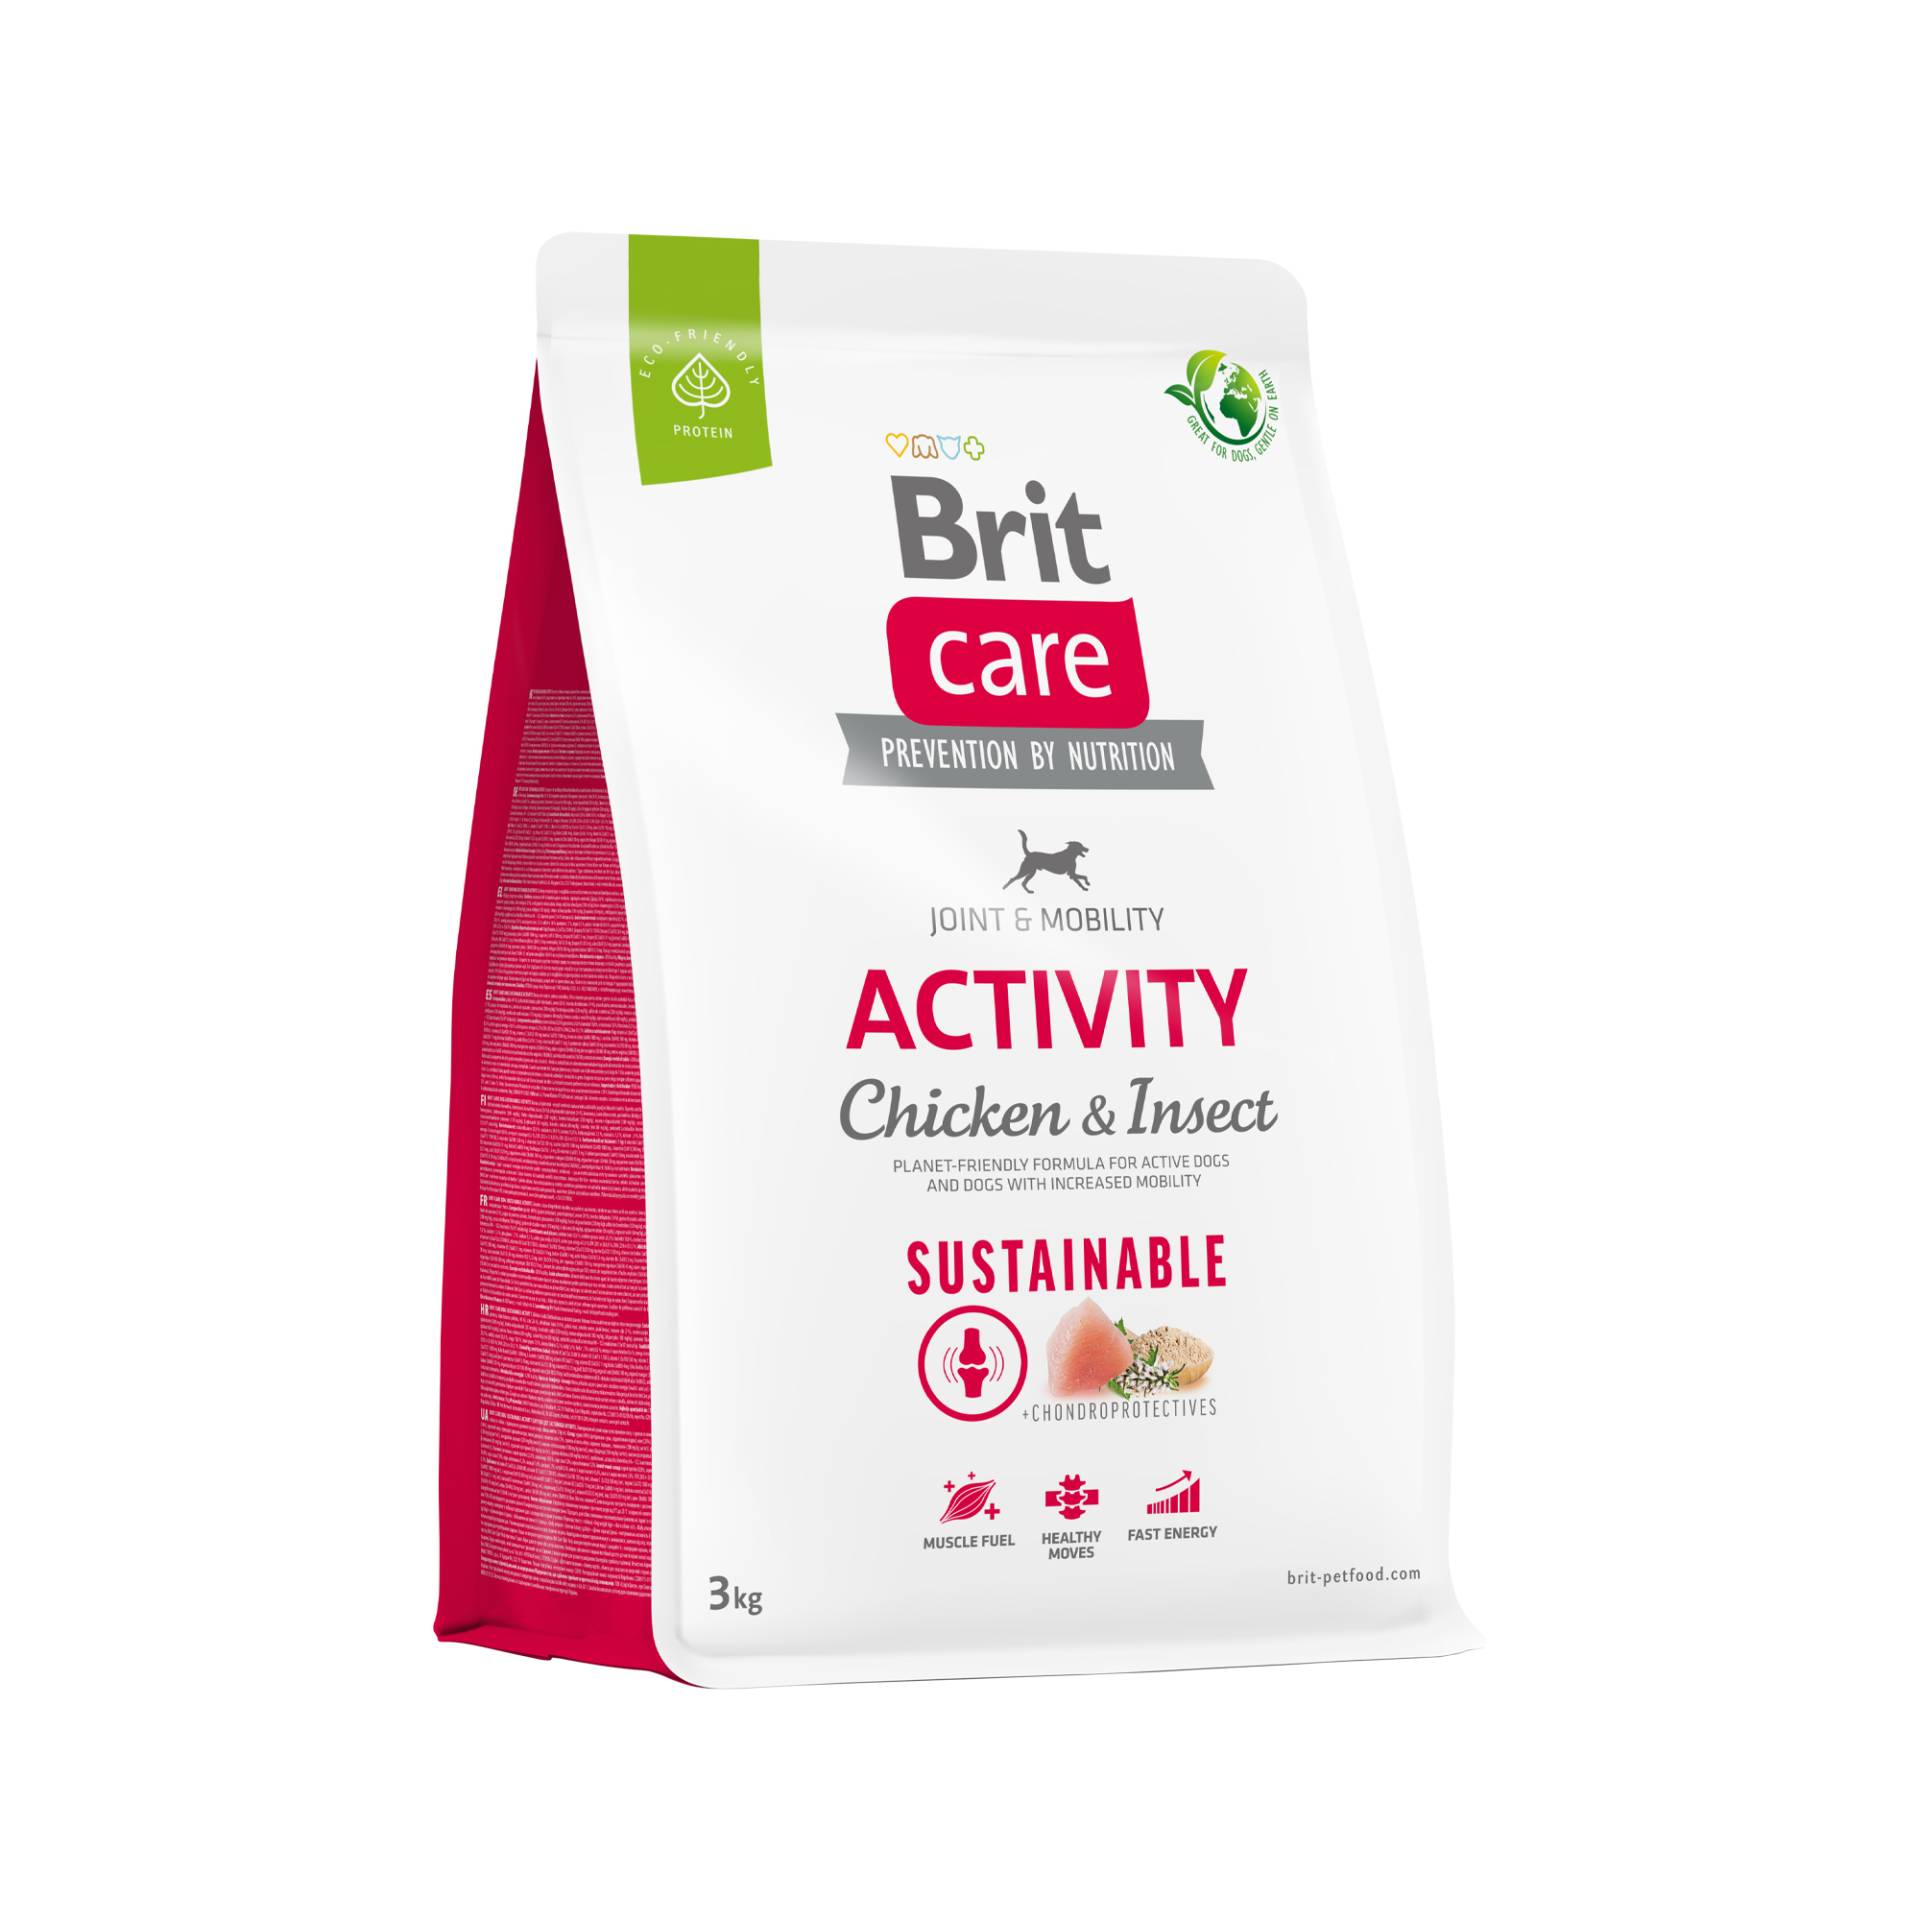 Brit Care - Sustainable Activity - Poulet et Insect - 12 kg von Brit